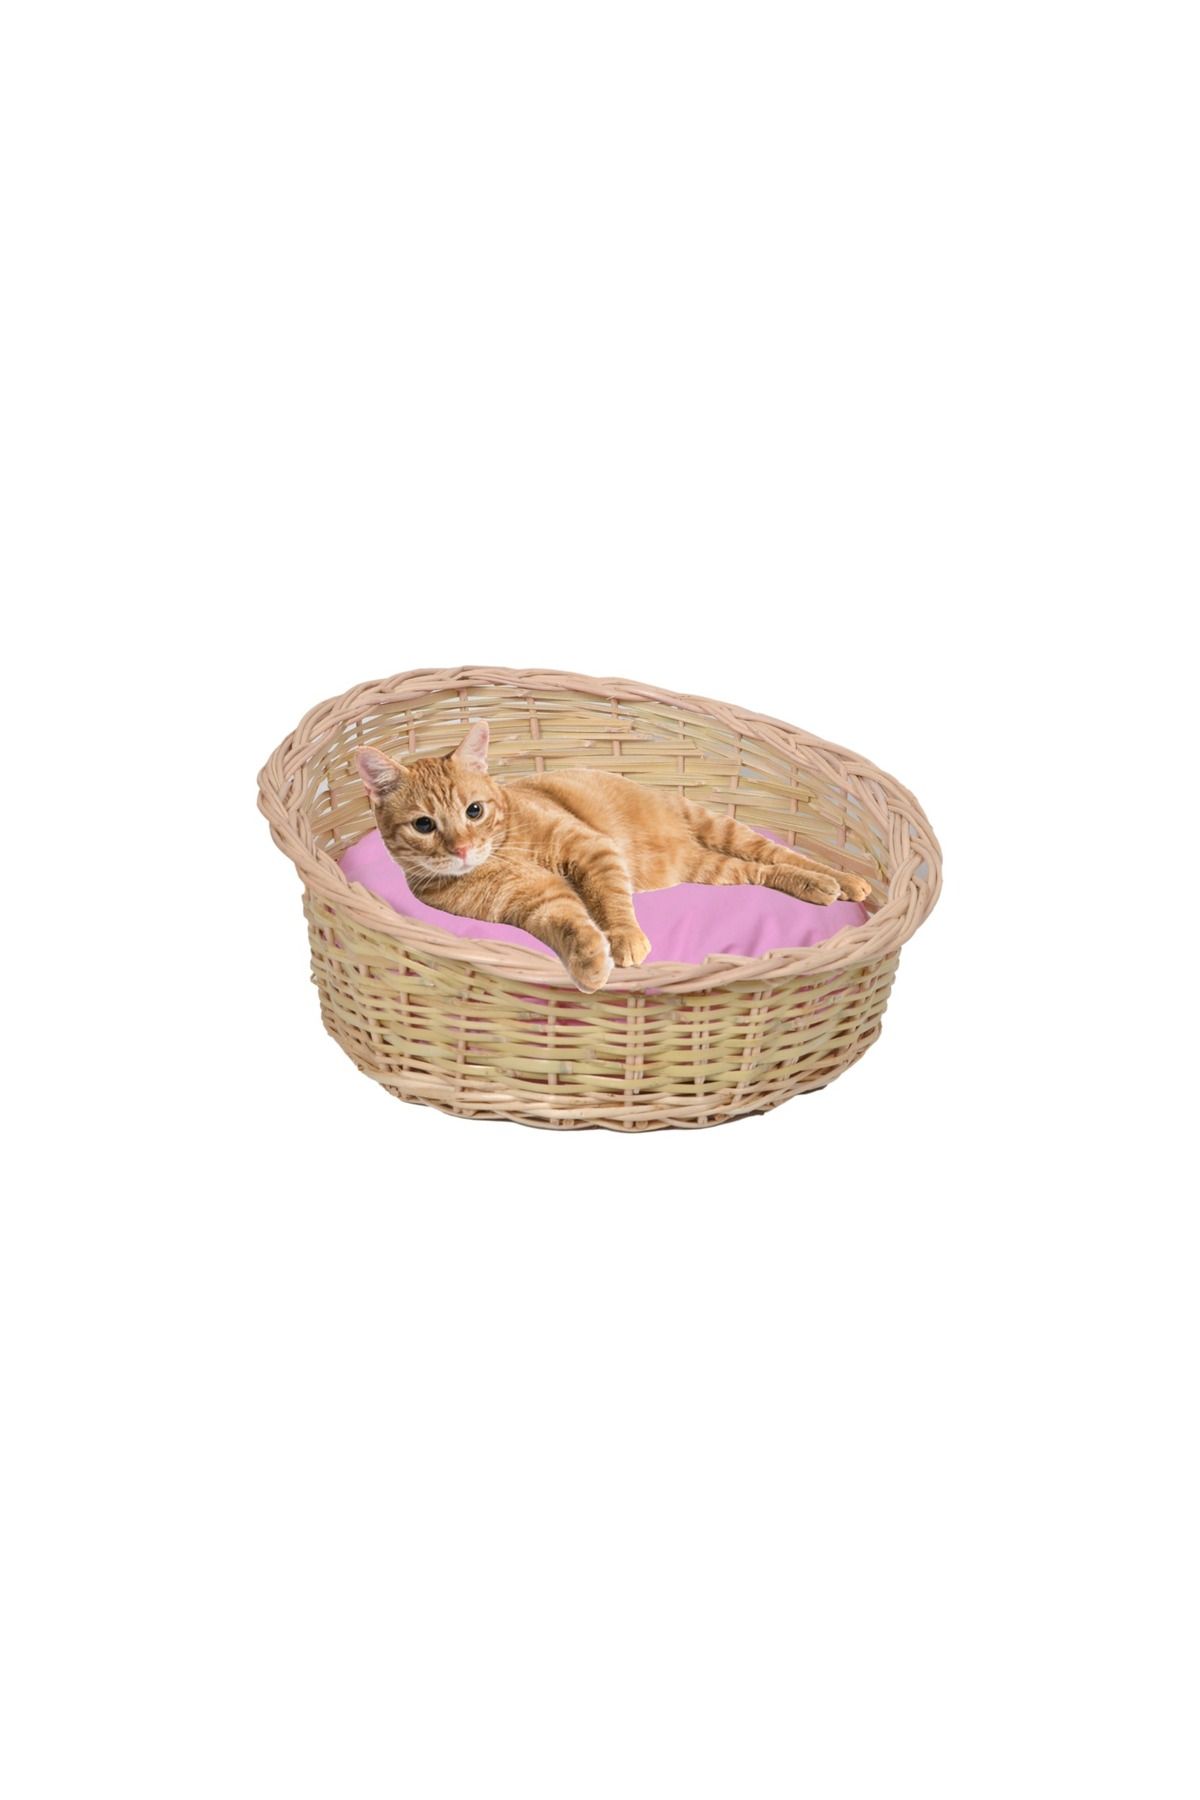 tunalar Hasır Kedi Köpek Yatağı Mor Minder Hediyeli Renkli El Yapımı Hasır 40 Cm